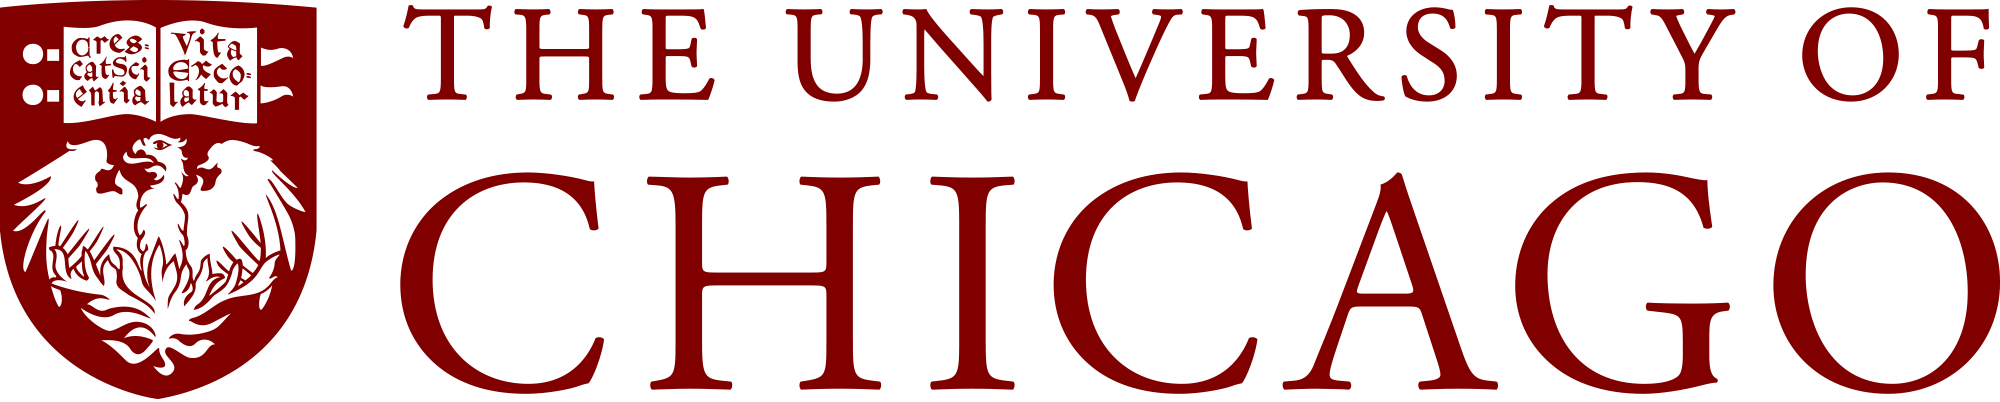 University Of Chicago - University Of Chicago Logo (2000x402)